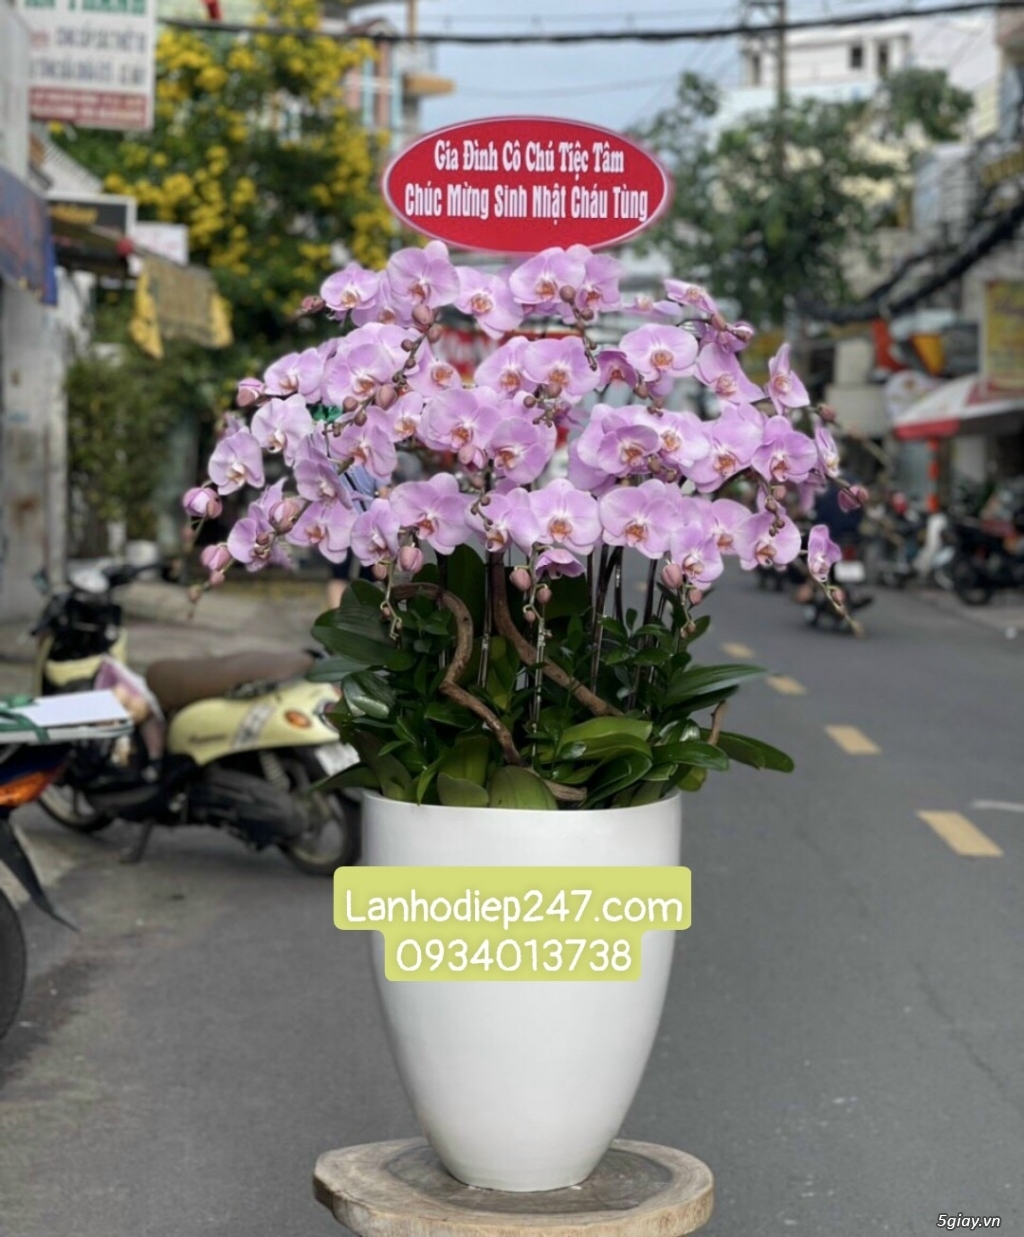 Shop hoa tươi lan hồ điệp tại quận 1 tphcm Lanhodiep247.com - 13